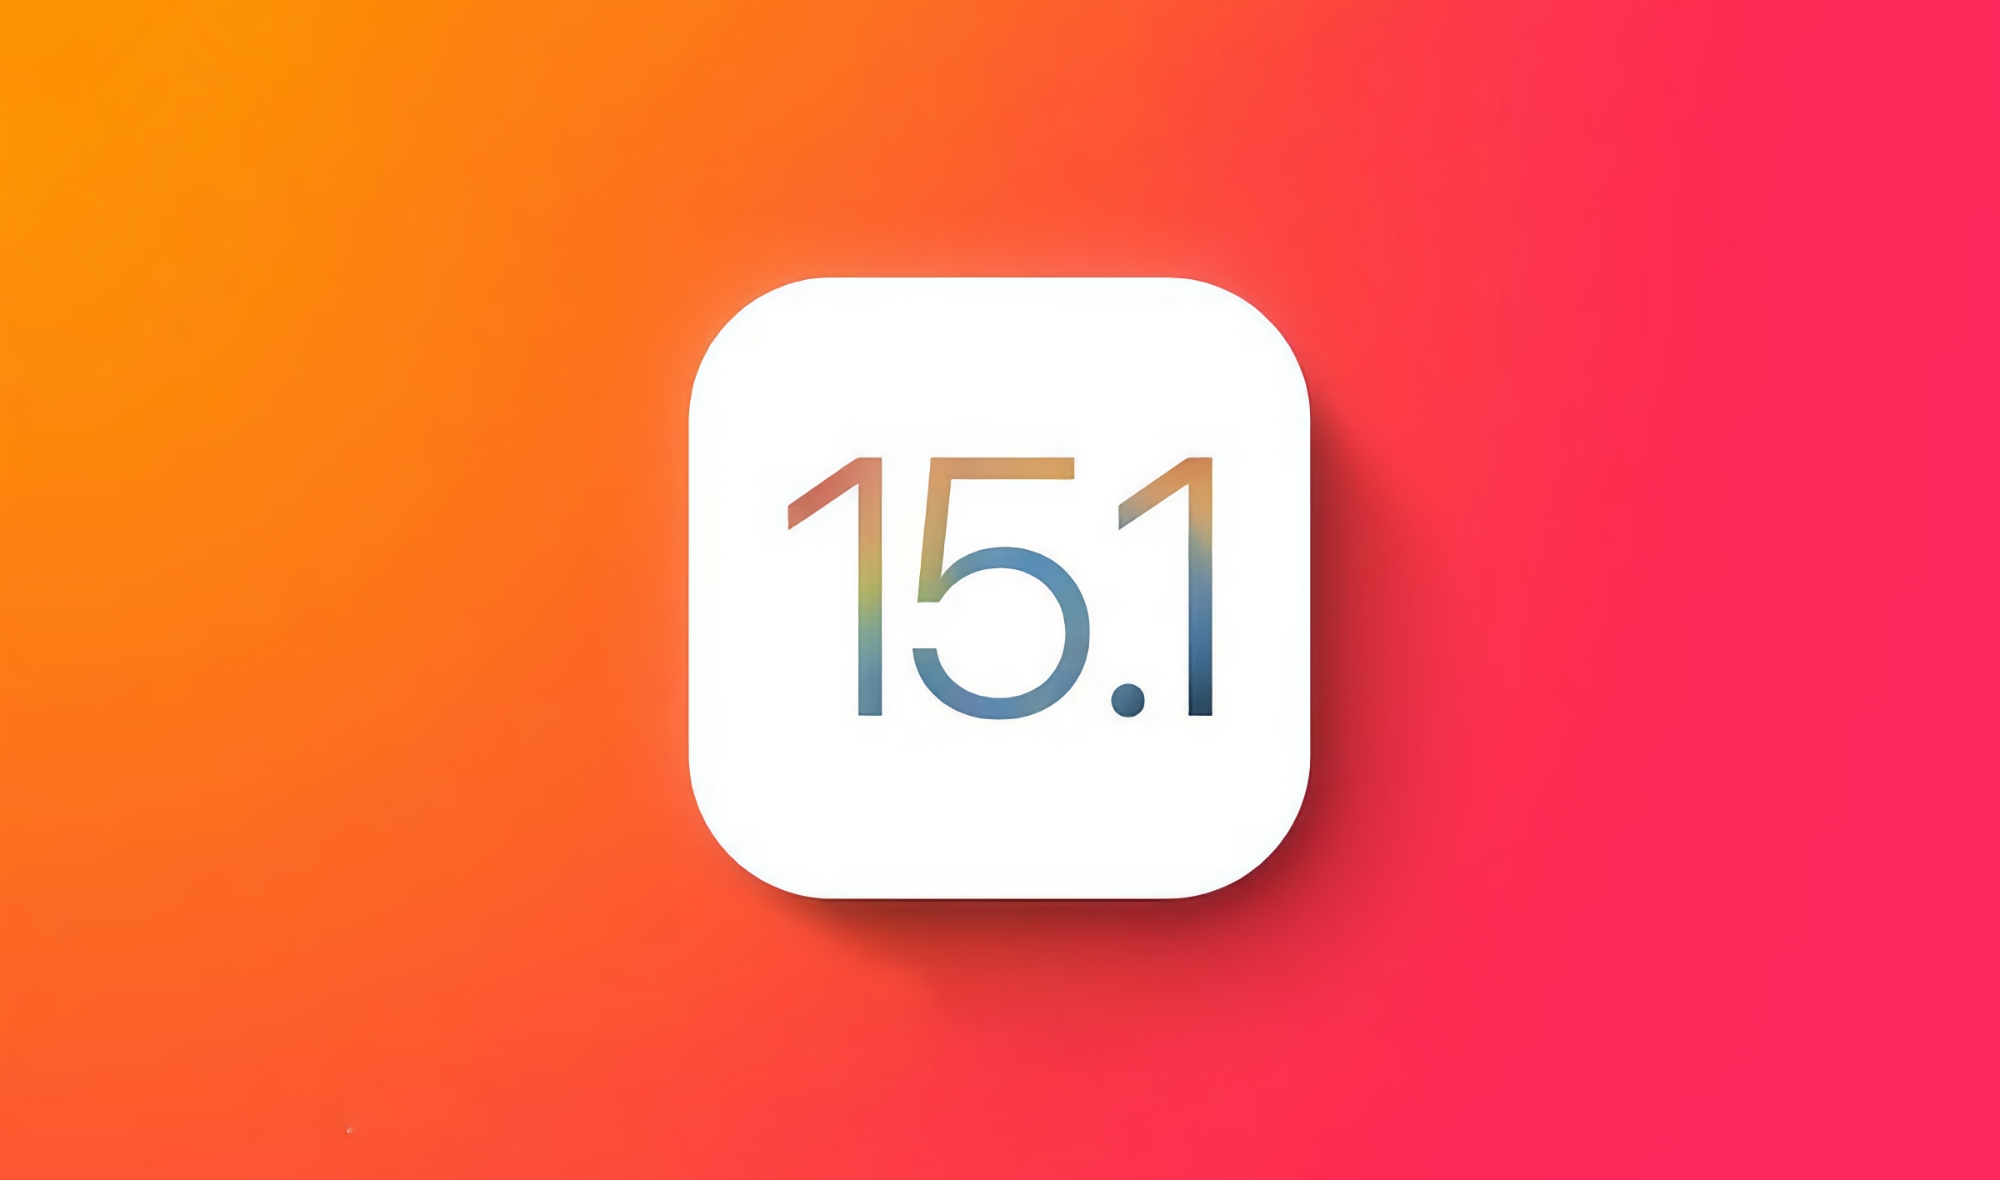 Apple veröffentlicht iOS 15.1: Was ist neu und wann ist es zu erwarten?